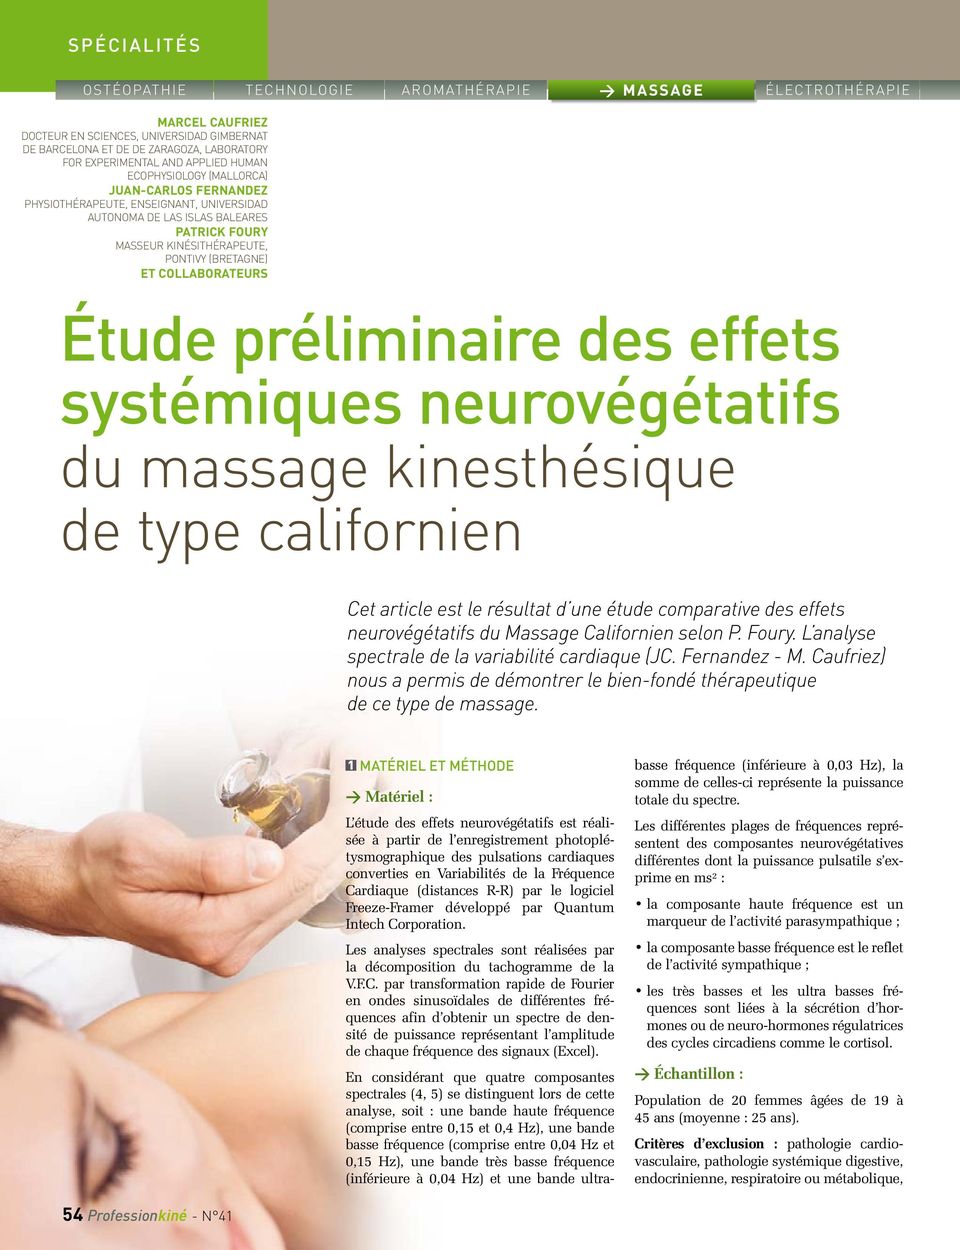 neurovégétatifs du massage kinesthésique de type californien Cet article est le résultat d une étude comparative des effets neurovégétatifs du Massage Californien selon P. Foury.